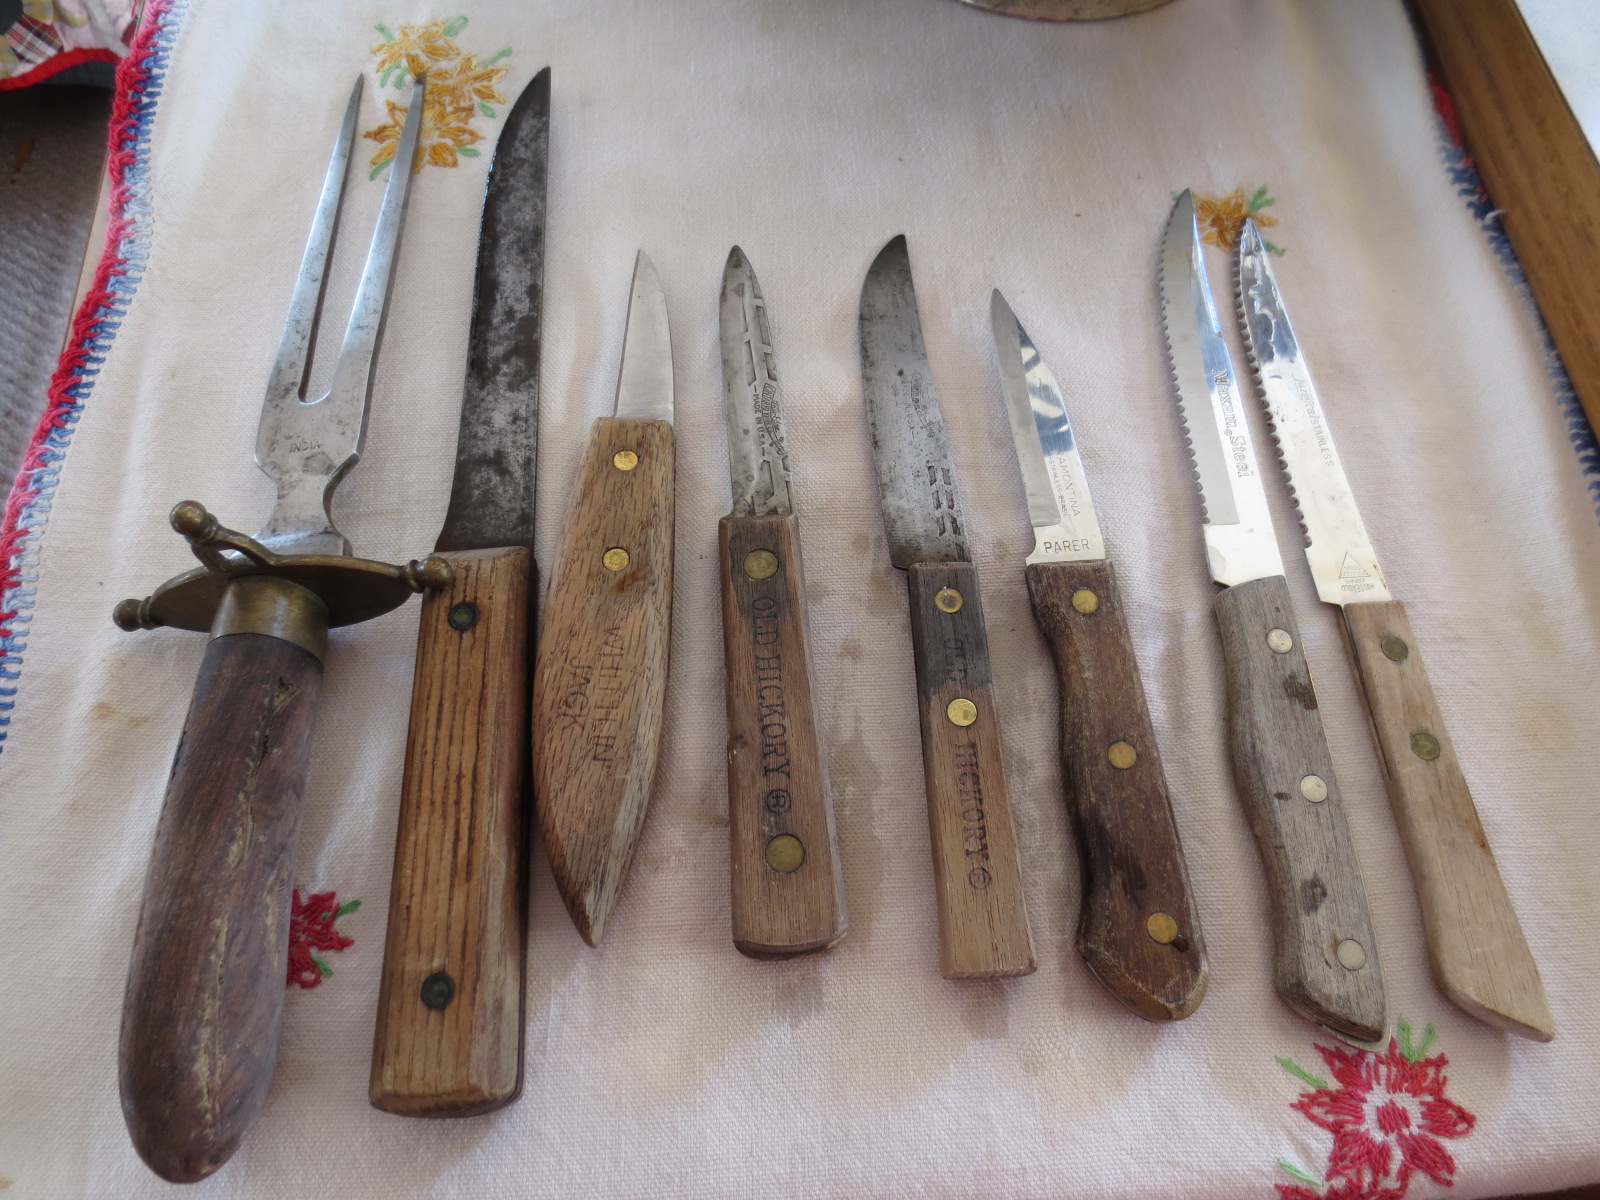 Linda's Life Journal: Vintage Old Hickory Knives